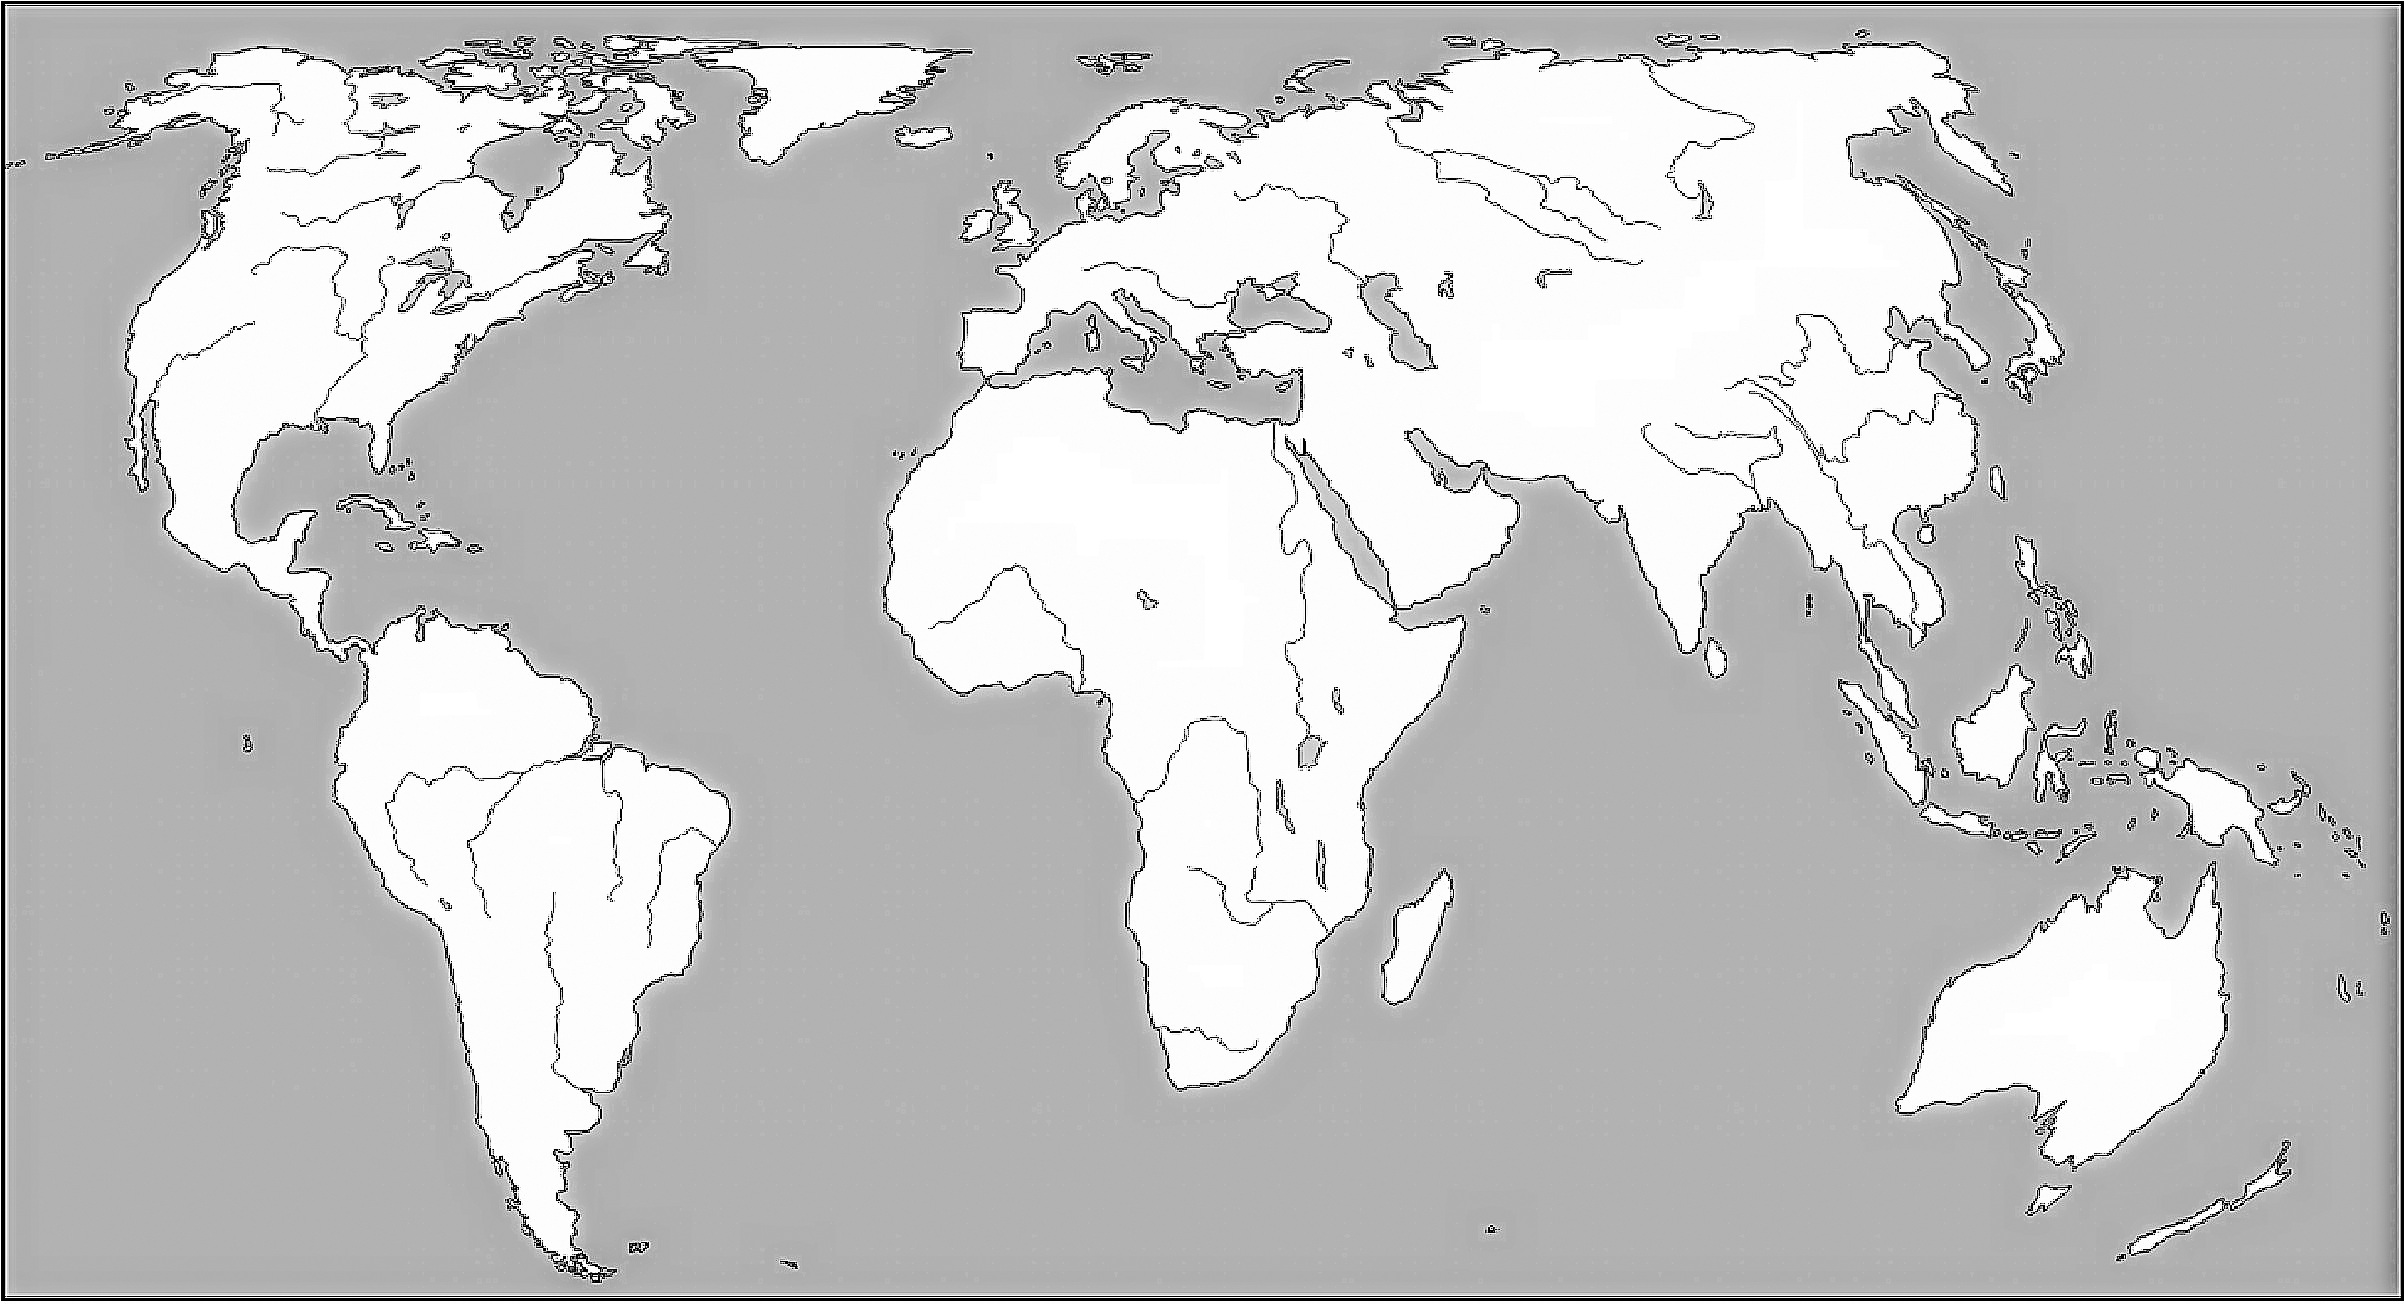 karta svijeta slijepa Osnovna škola Veruda Pula   Ivan Gambiroža karta svijeta slijepa